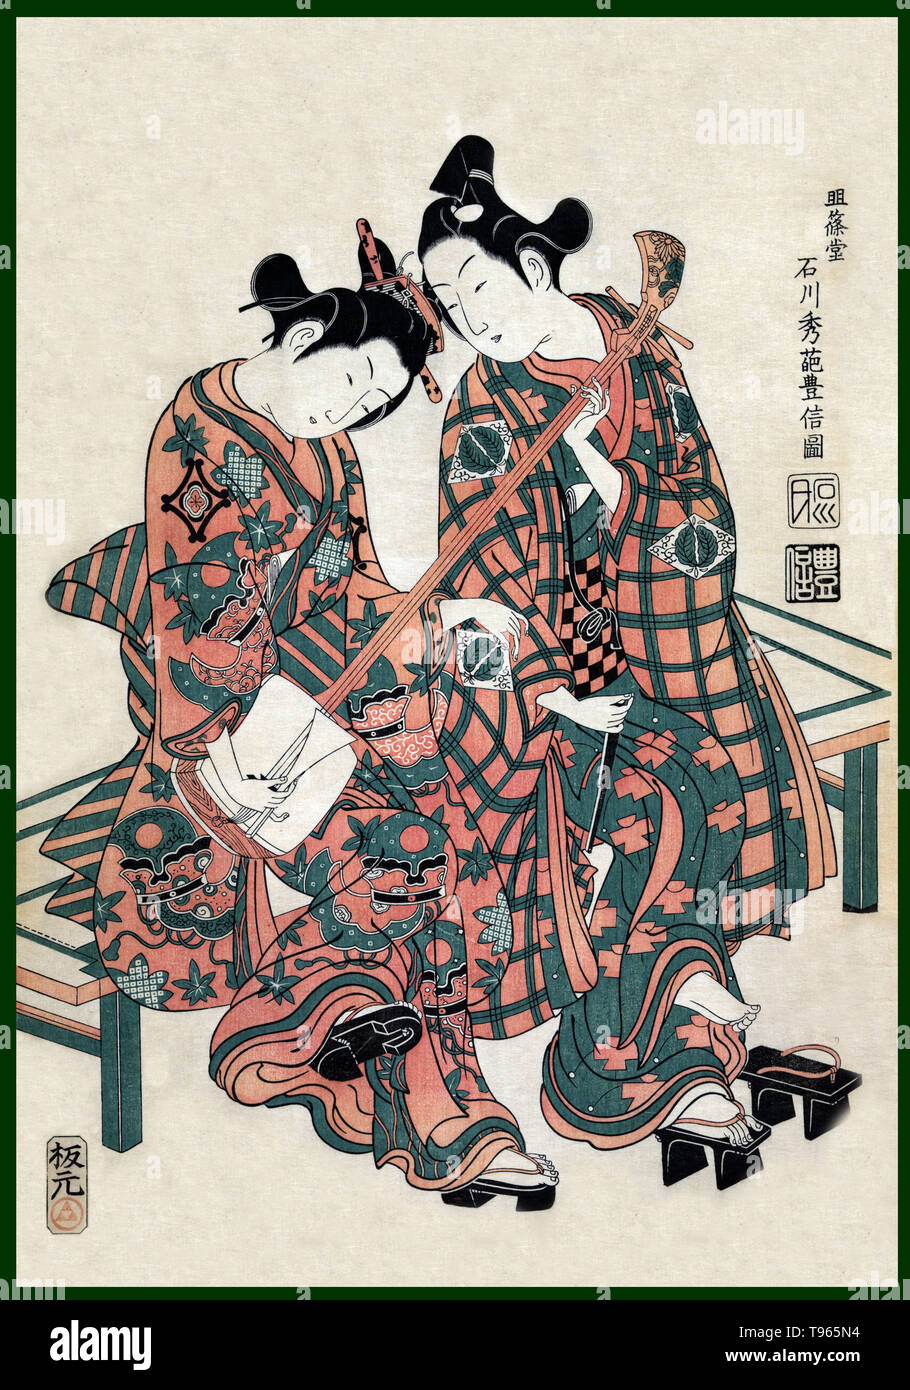 Zwei Musiker auf einer Bank sitzt, geta tragen. Ein Mann und eine Frau sitzen auf einer Bank, Spielen, shamisen. Ukiyo-e (Bilder der fließenden Welt) ist ein Genre der japanischen Kunst, die vom 17. bis 19. Jahrhundert blühte. Ukiyo-e war zentral für die Wahrnehmung des Westens für Japanische Kunst im späten 19. Jahrhundert. Aus den 1870er Jahren Japonismus zu einem bedeutenden Trend und hatte einen starken Einfluss auf die frühen Impressionisten, sowie Post-Impressionists und Jugendstil Künstler. Stockfoto